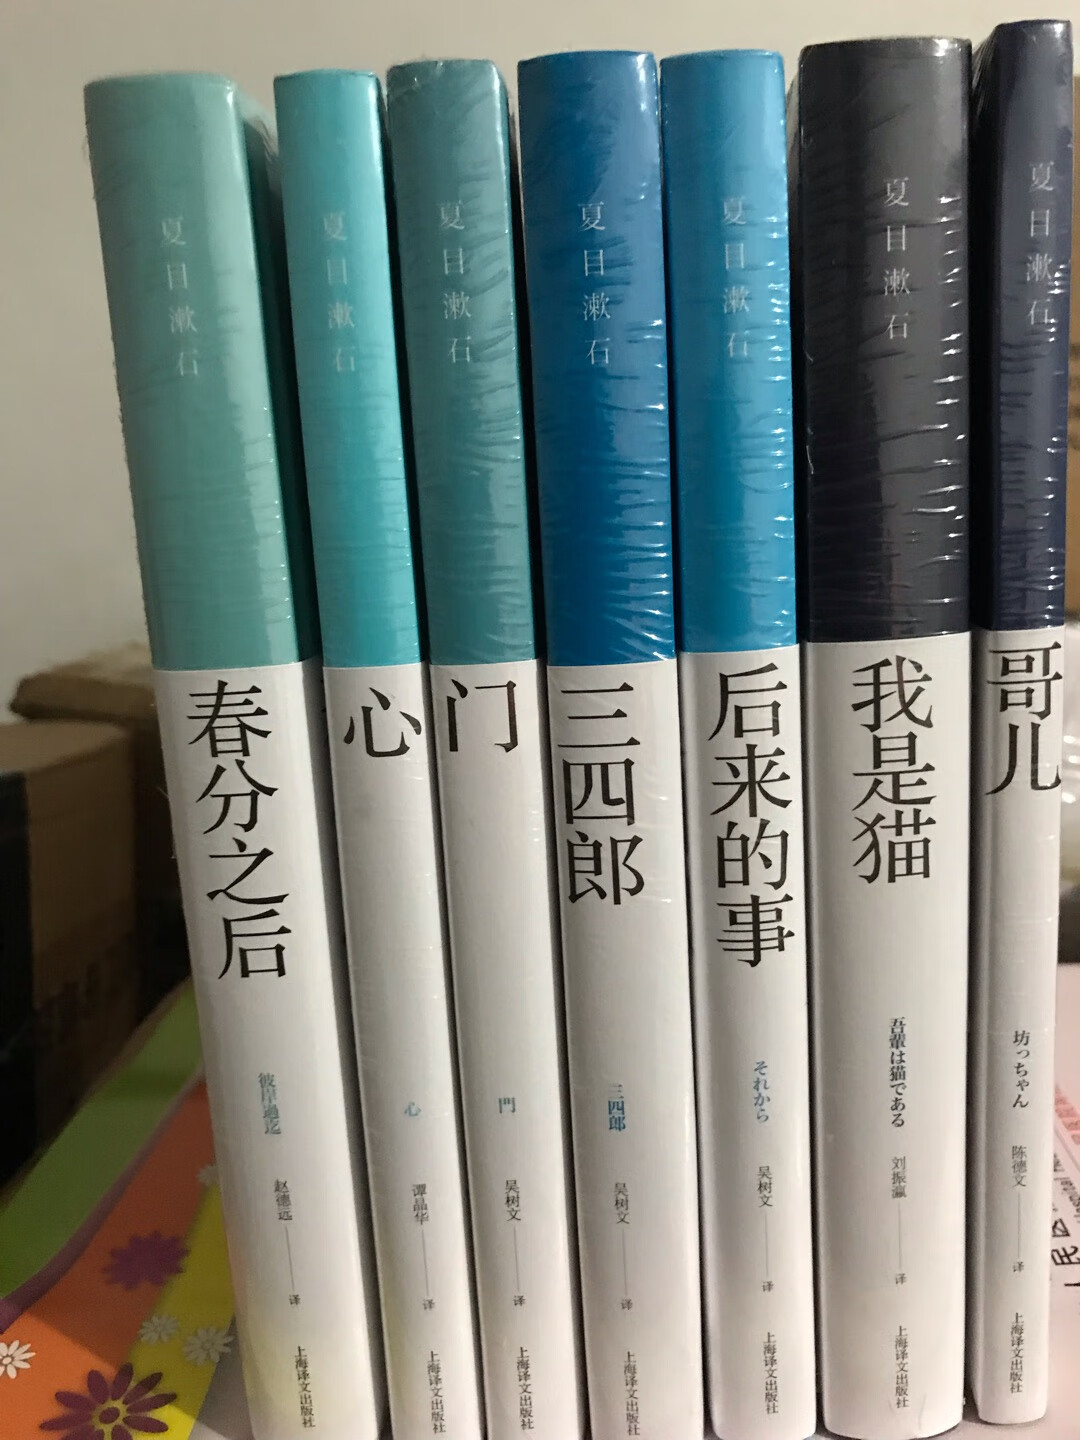 《门》是夏目漱石反自然主义的代表作品之一，作者以现实主义与浪漫主义相结合的手法，创作了一个感伤的世界。